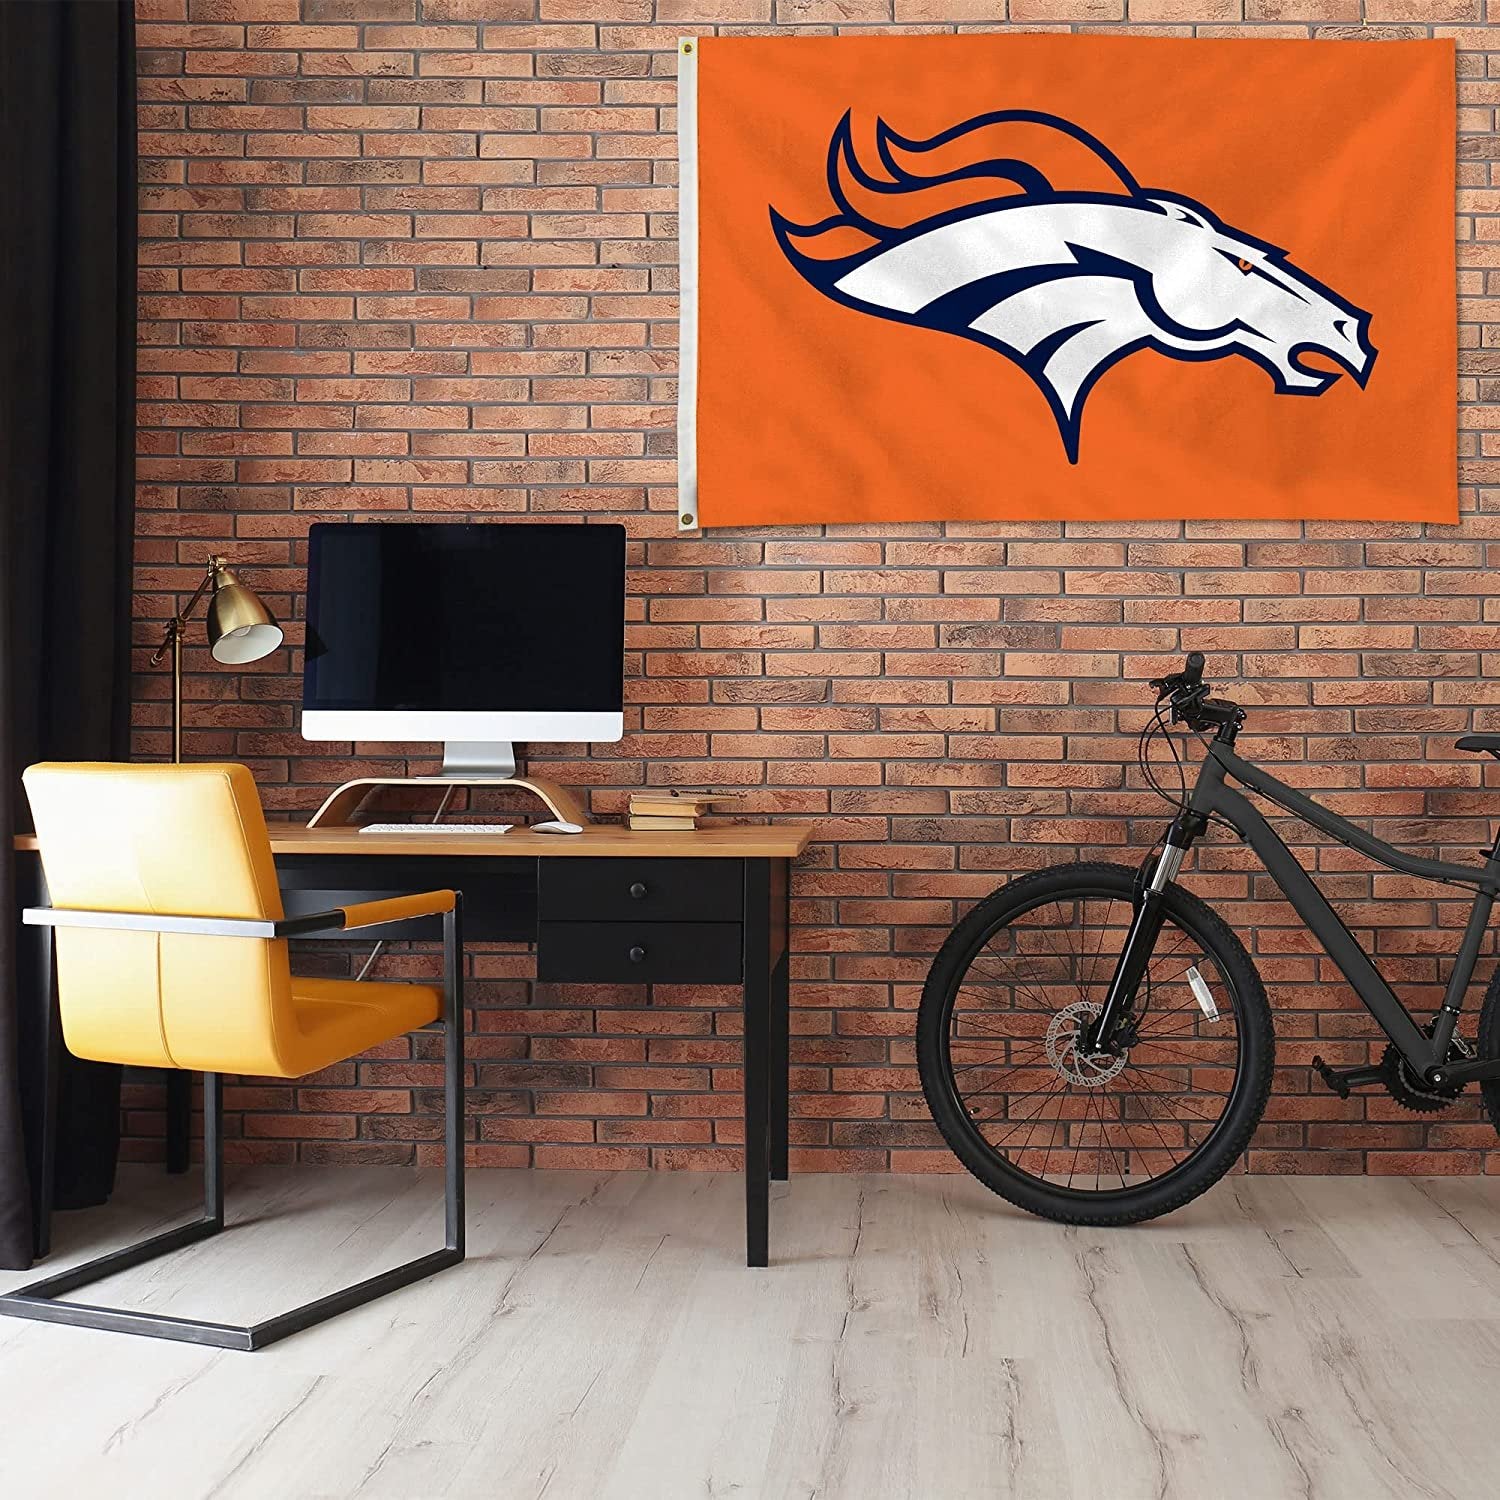 Denver Broncos Premium 3x5 Foot Flag Banner Metal Grommets Indoor Outdoor